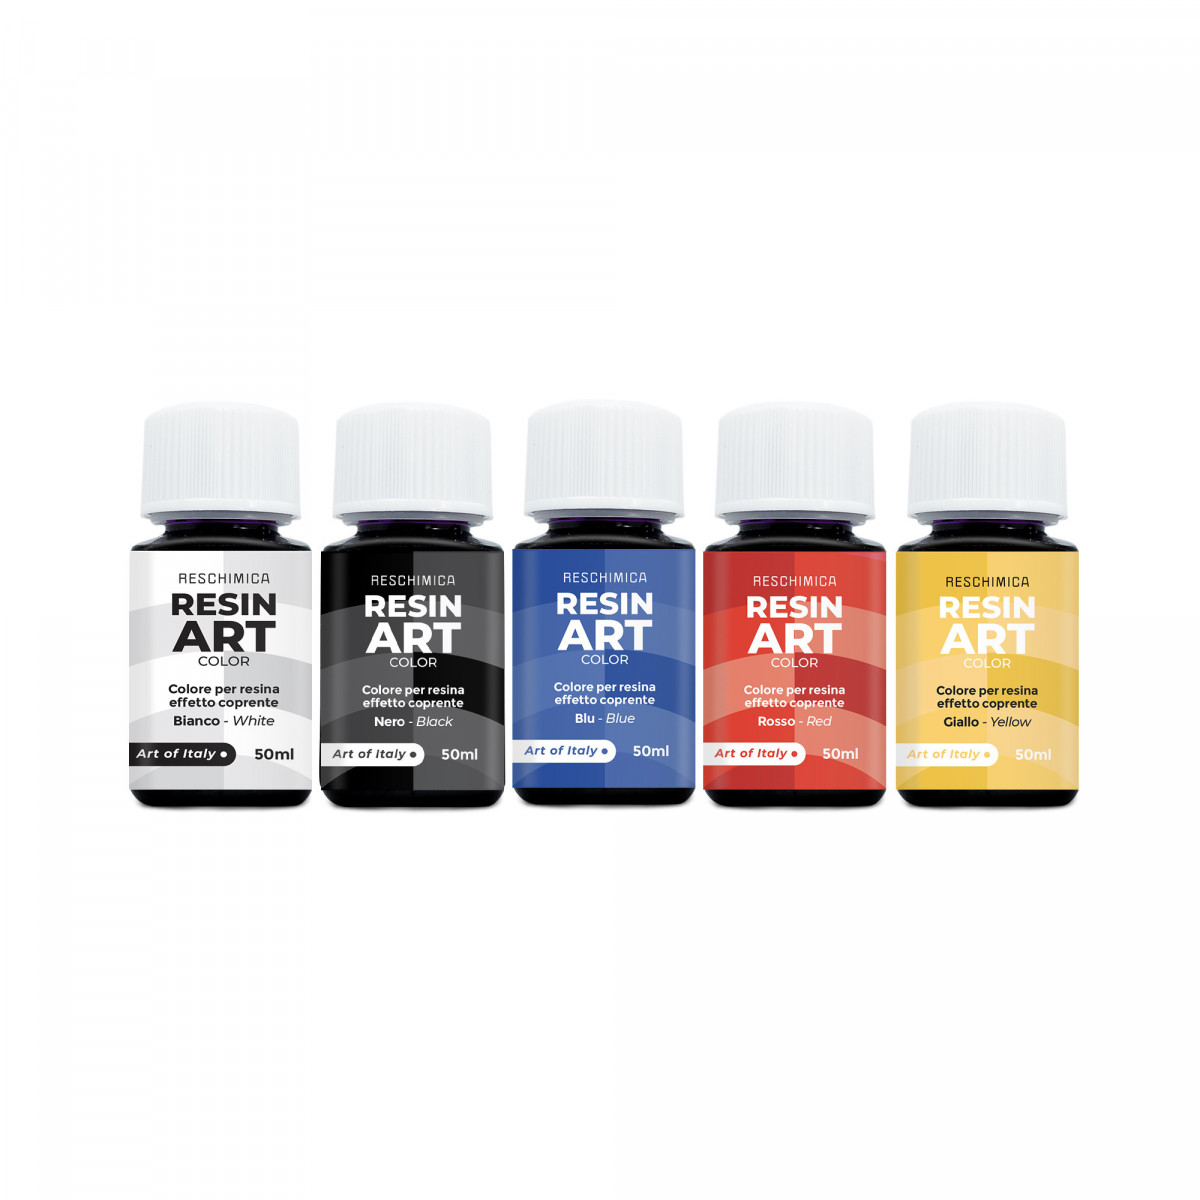 RESIN ART COLOR - Intensive und brillante Farben für Kunstharz in 5 Farben von 50ml (Deckungseffekt)